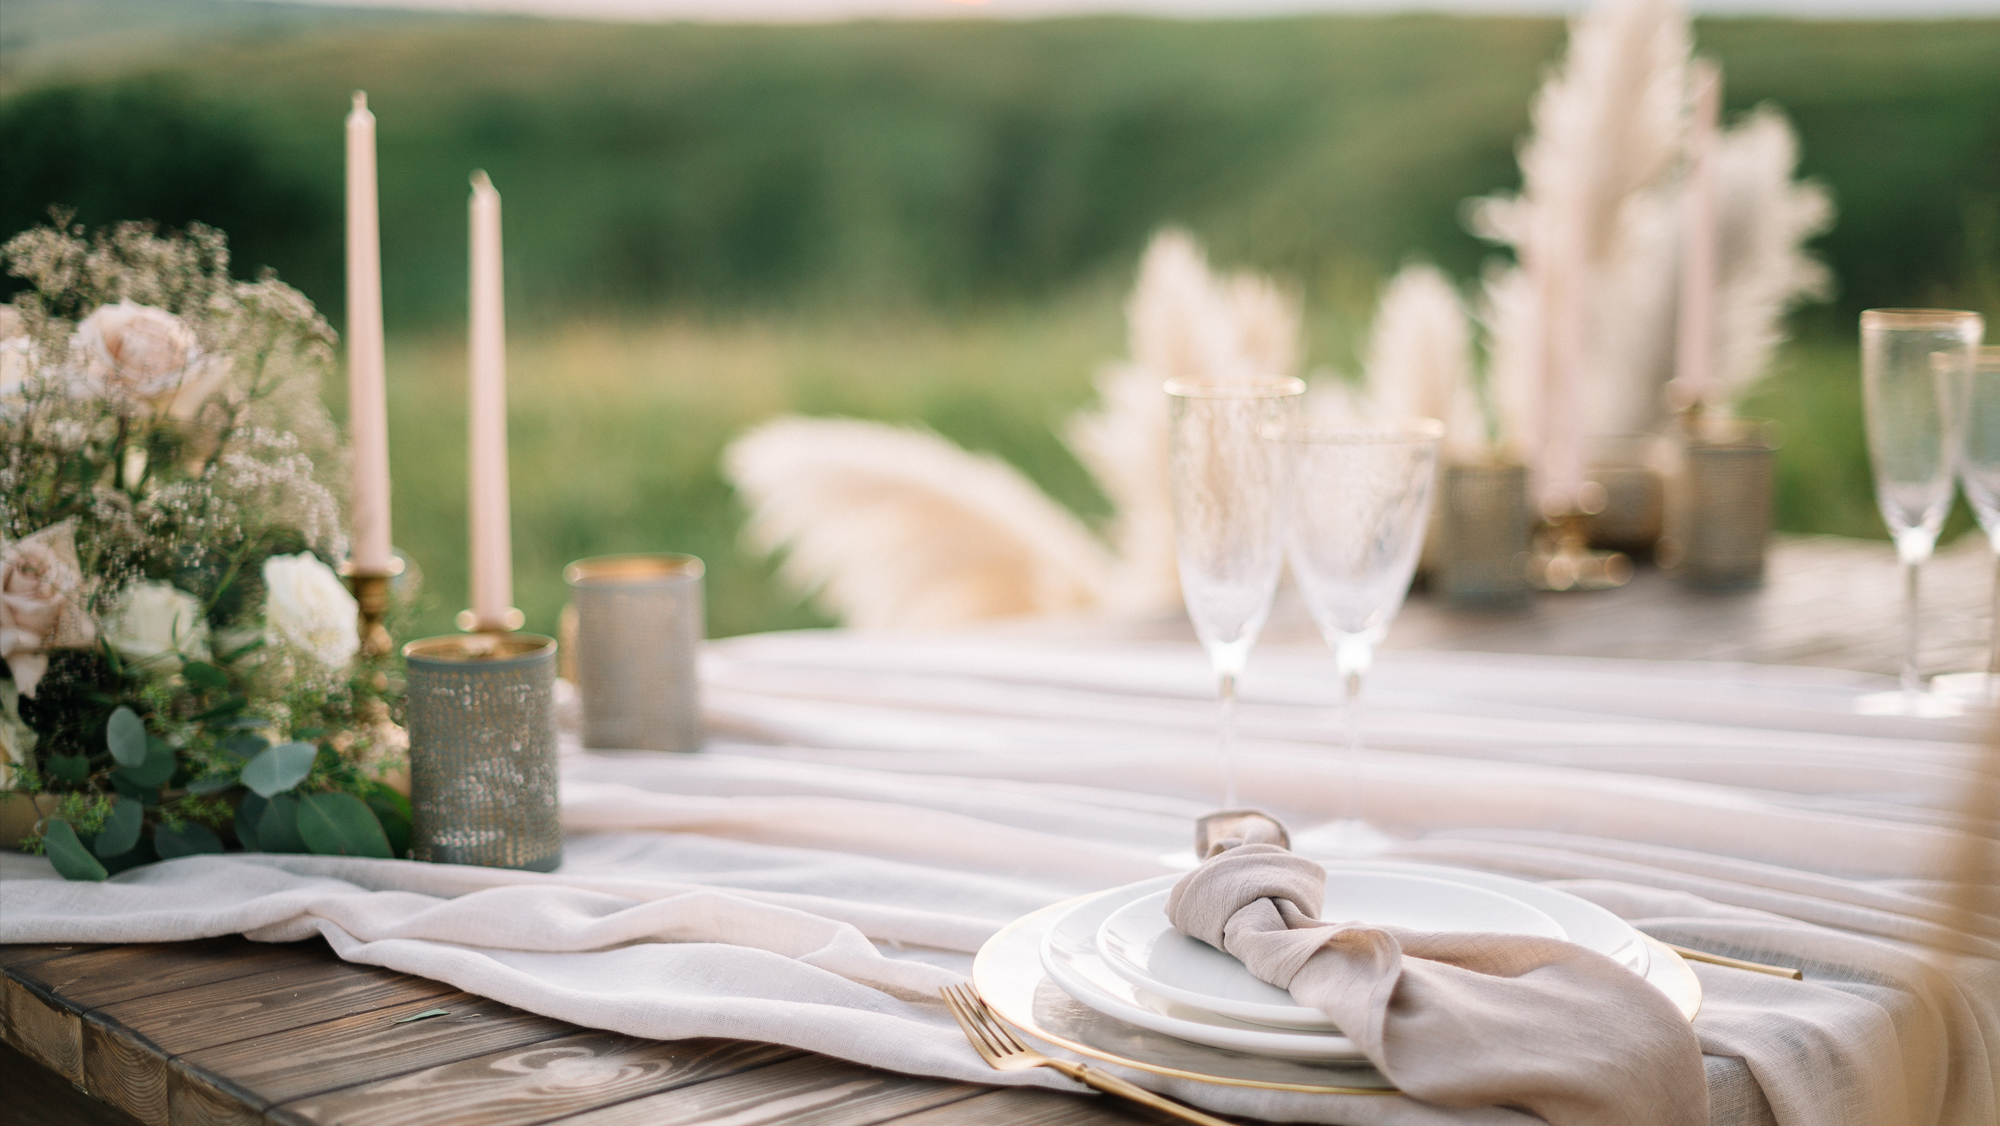 23 Outdoor Wedding Table Decor Ideas